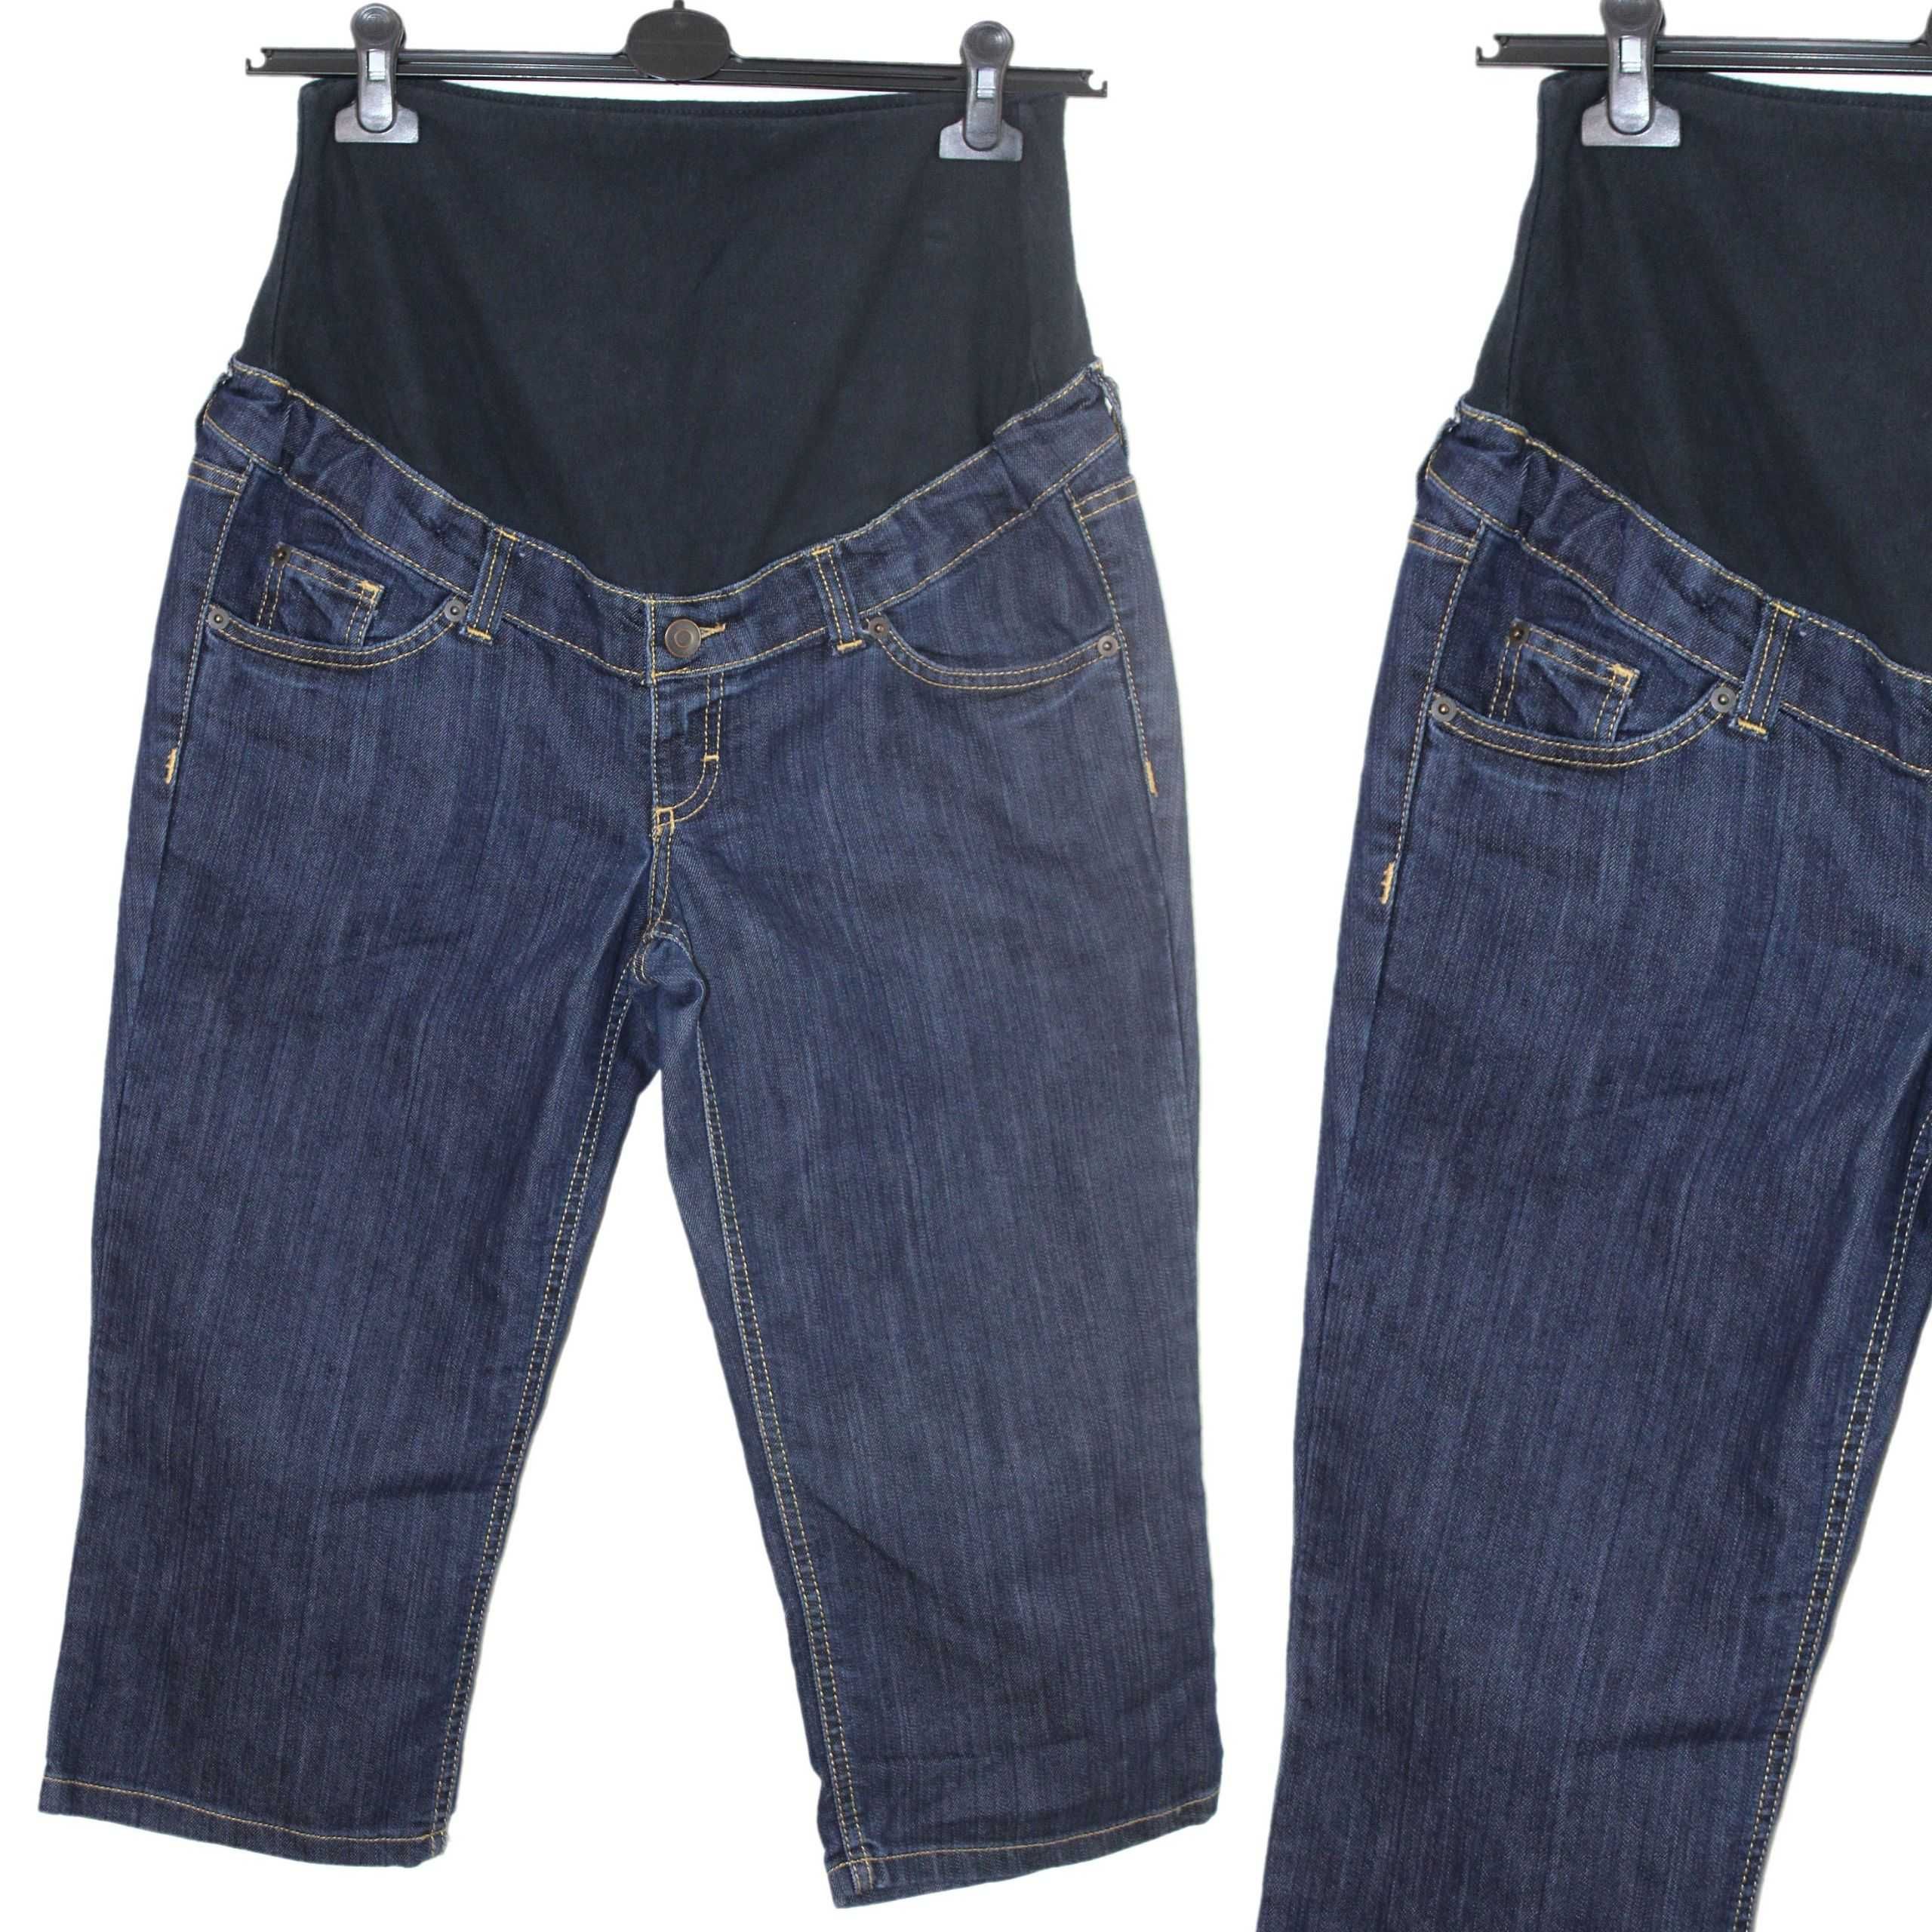 y4 H&M MAMA Wygodne Granatowe Spodnie Ciążowe Jeans Rybaczki 42 XL